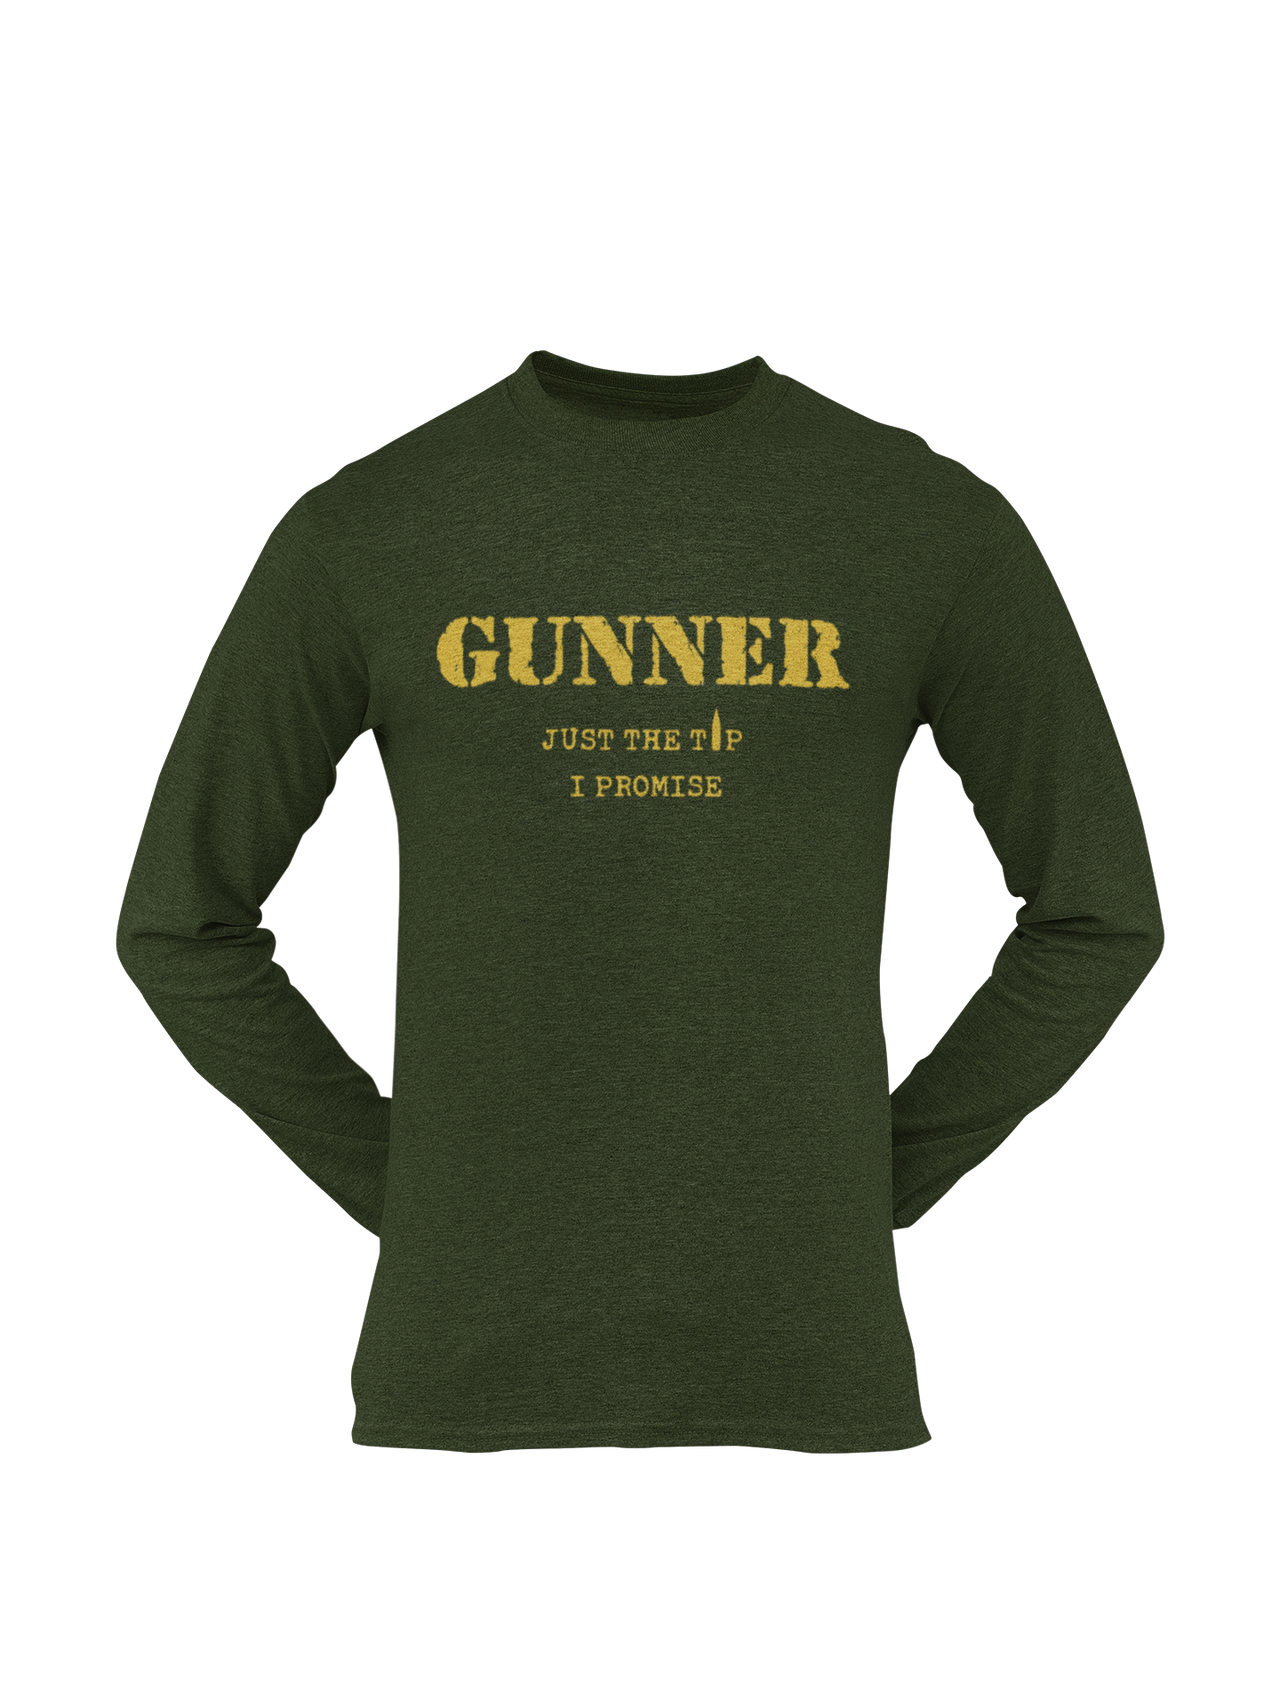 Gunner T-shirt – Just the Tip, I Promise (Men)